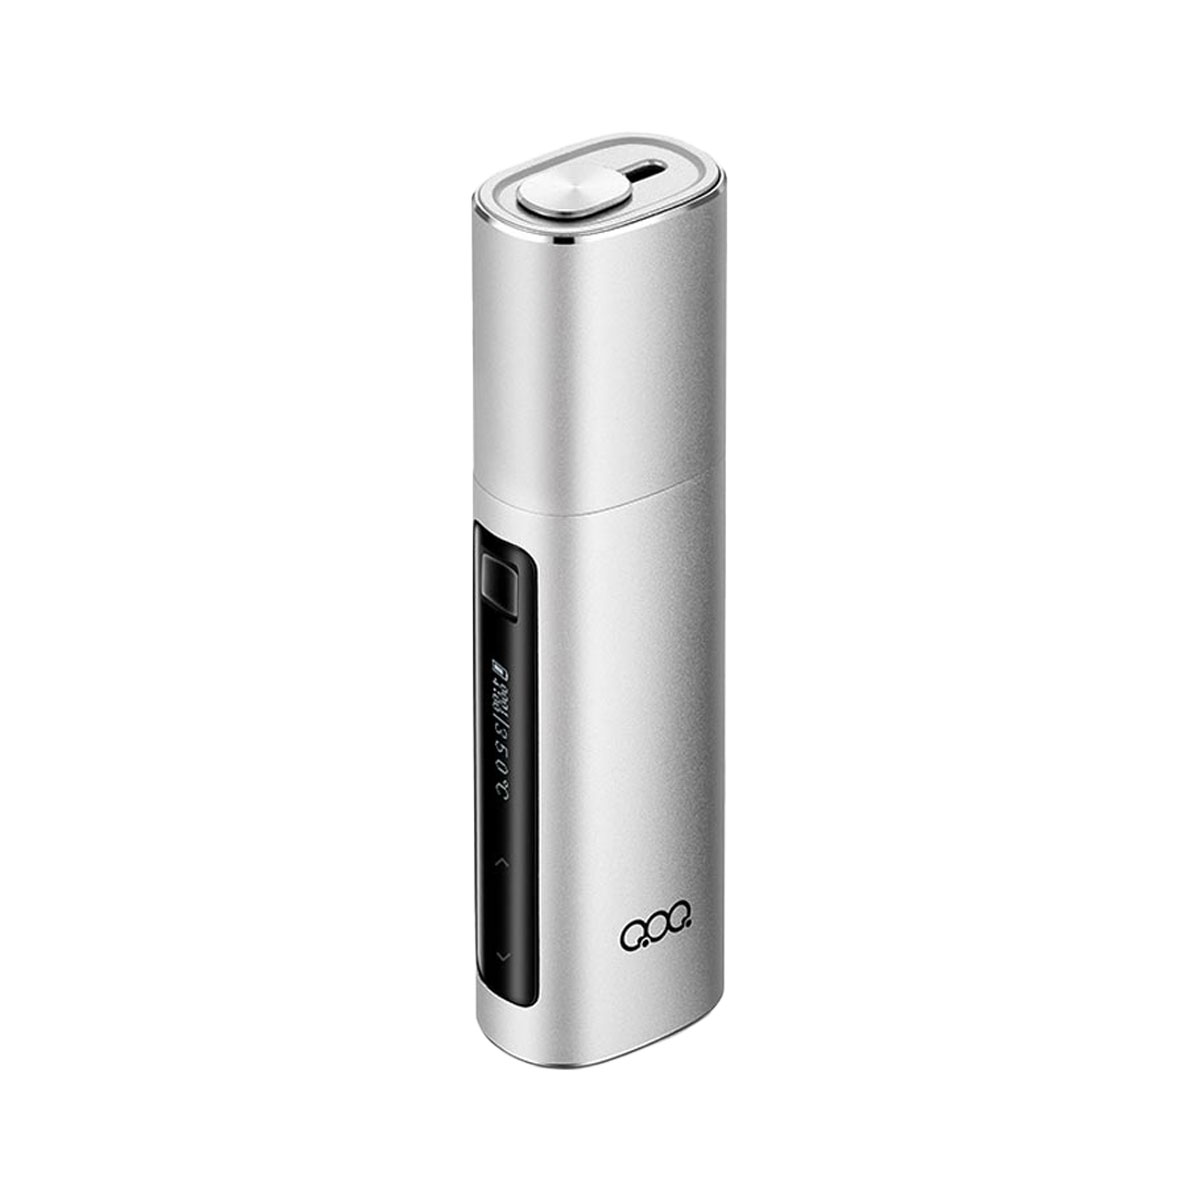 激安特価品 新品未開封>QOQ Honor MAX 加熱式たばこ 電子タバコ 第3